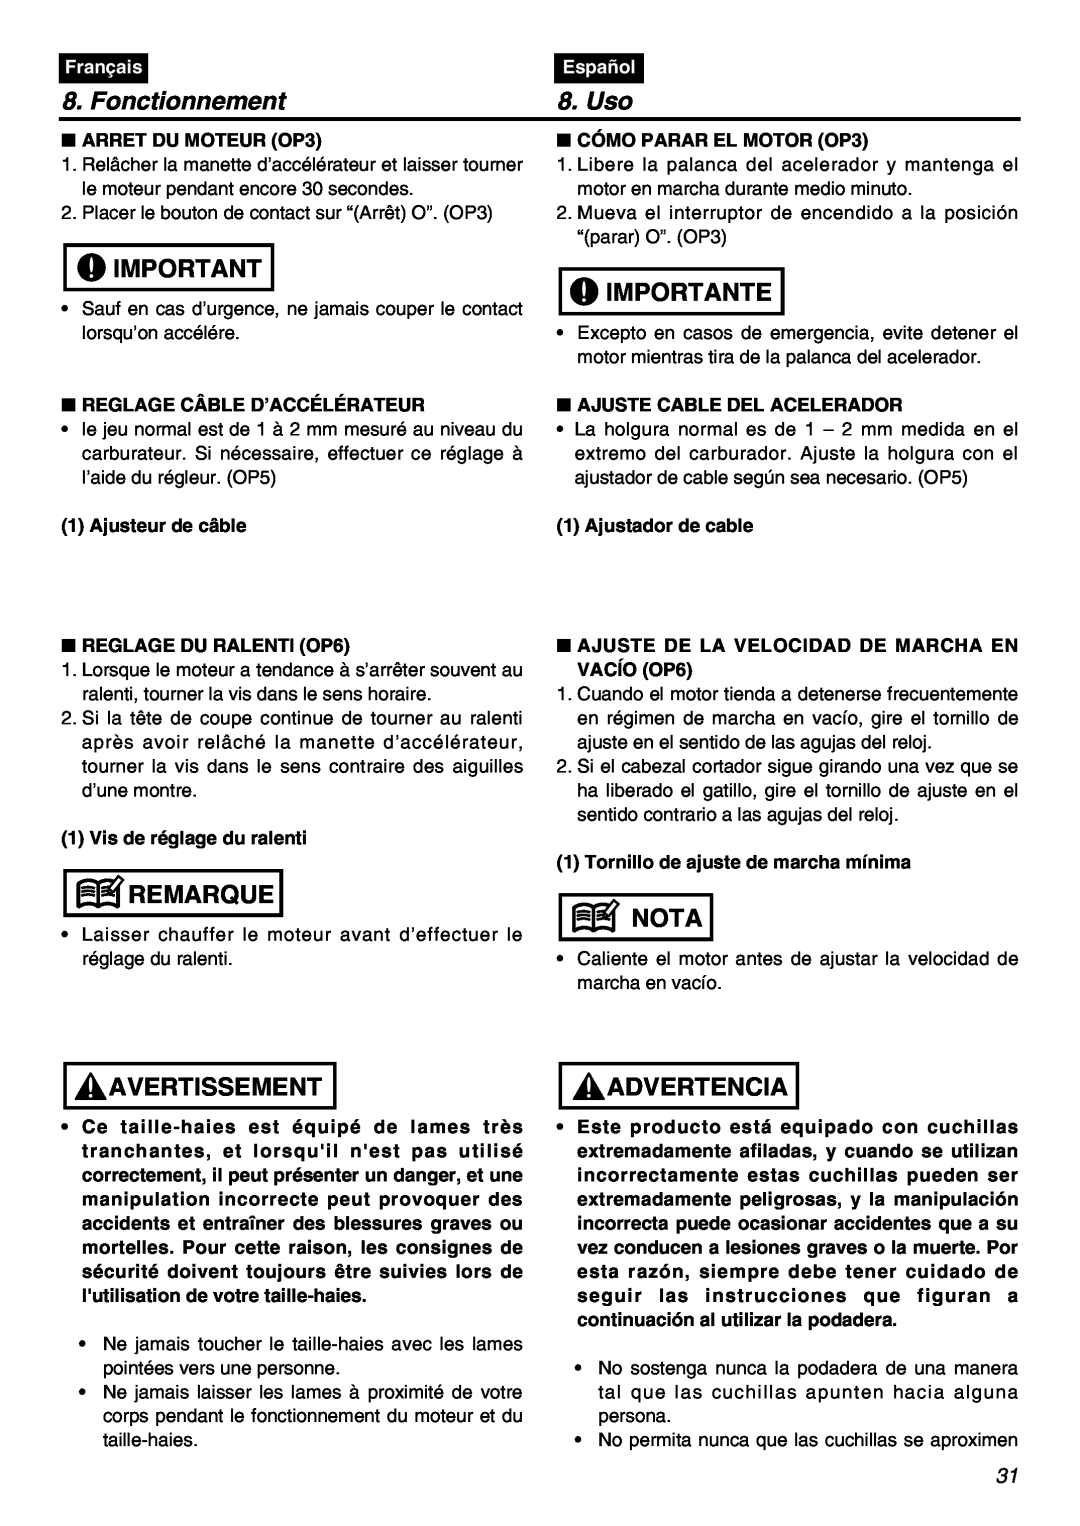 RedMax SRTZ2401F manual Fonctionnement, Uso, Importante, Remarque, Avertissement, Nota, Advertencia, Français, Español 